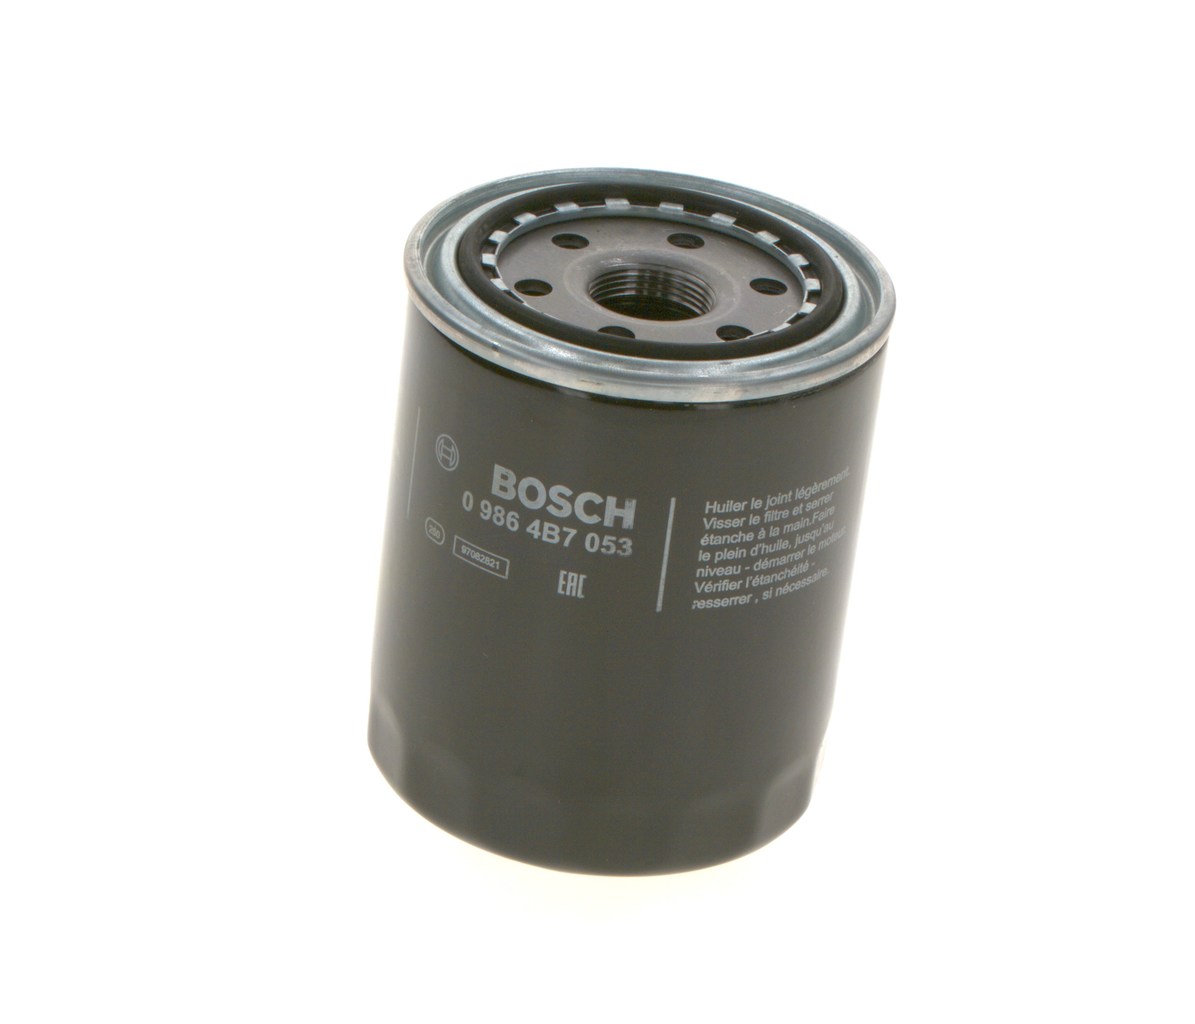 BOSCH 0 986 4B7 053 Oil filter M 26 x 1,5, Spin-on Filter